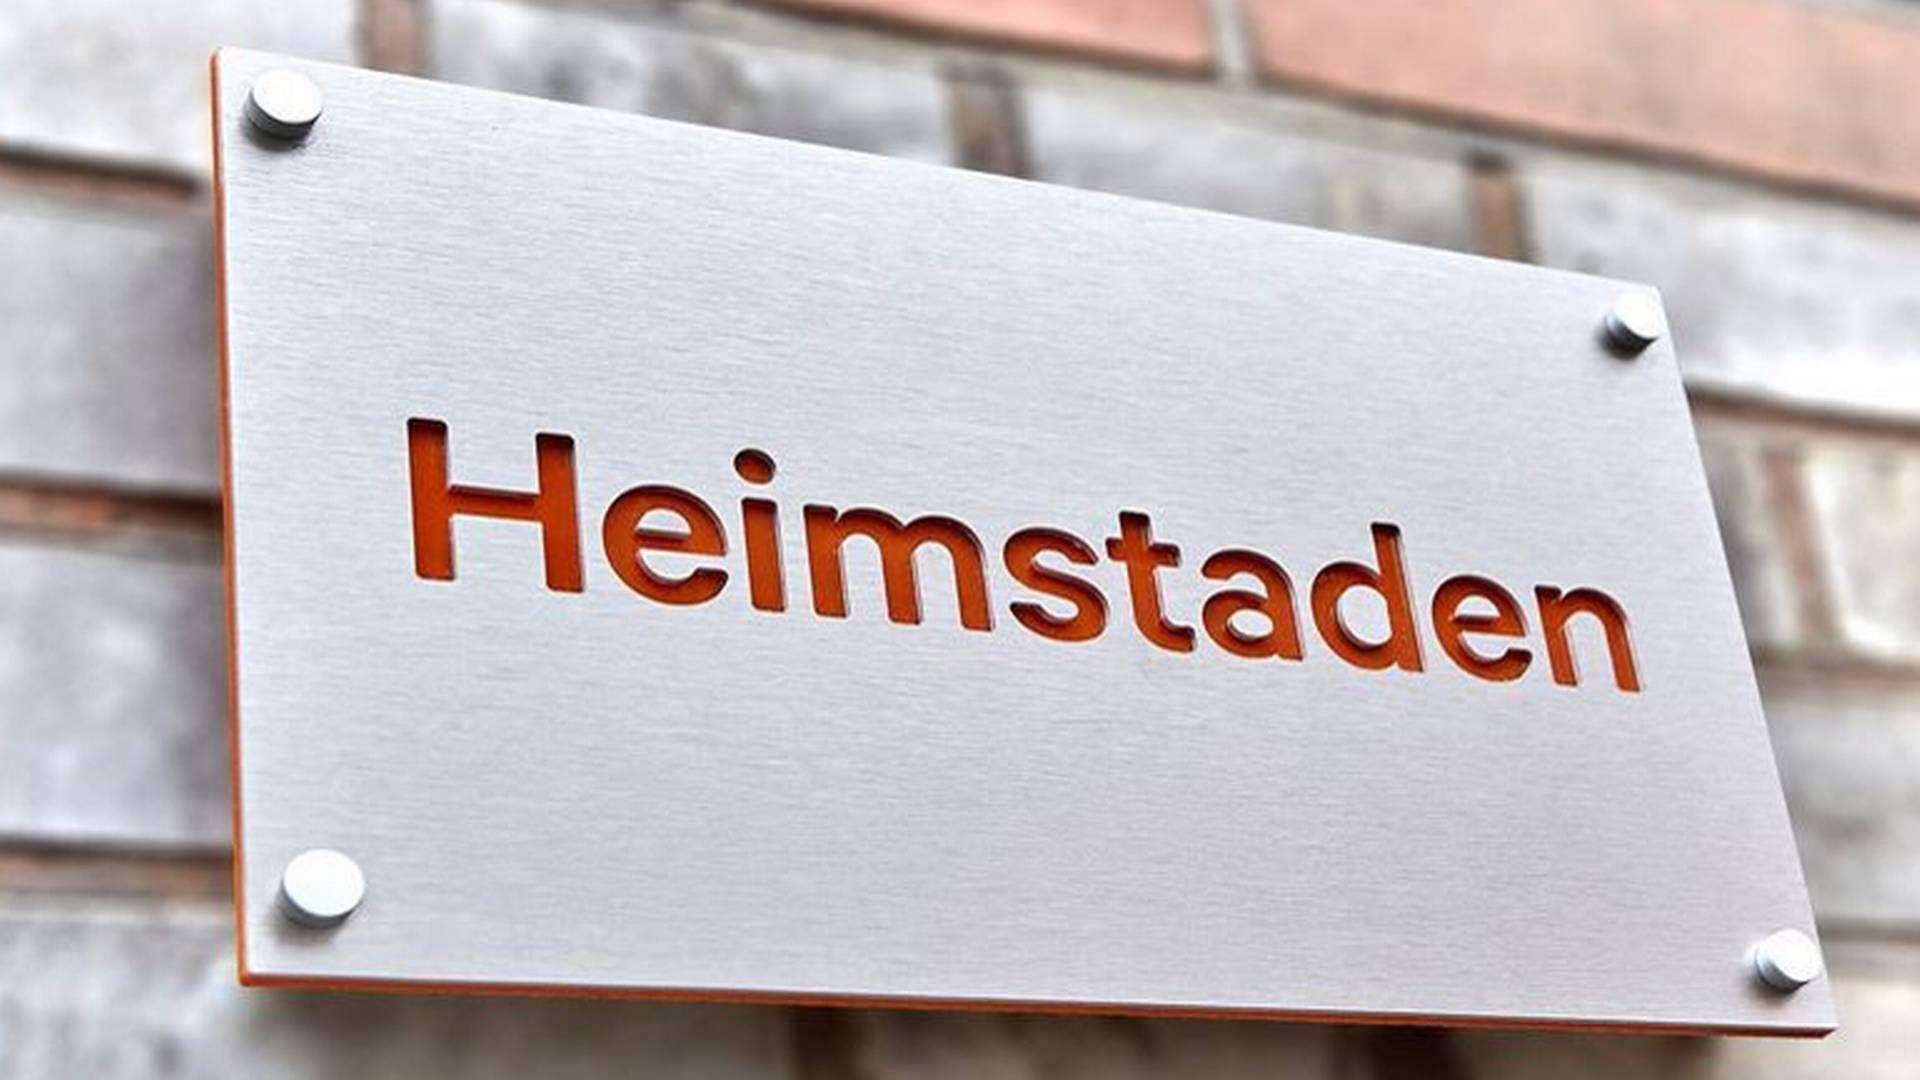 Hos Heimstaden, som den norske velhaver Ivar Tollefsen kontrollerer, tyder intet på, at medarbejdere er involveret i bestikkelse, sagde bestyrelsesformand Helge Leiro Baastad i sidste måned. | Foto: PR / Heimstaden